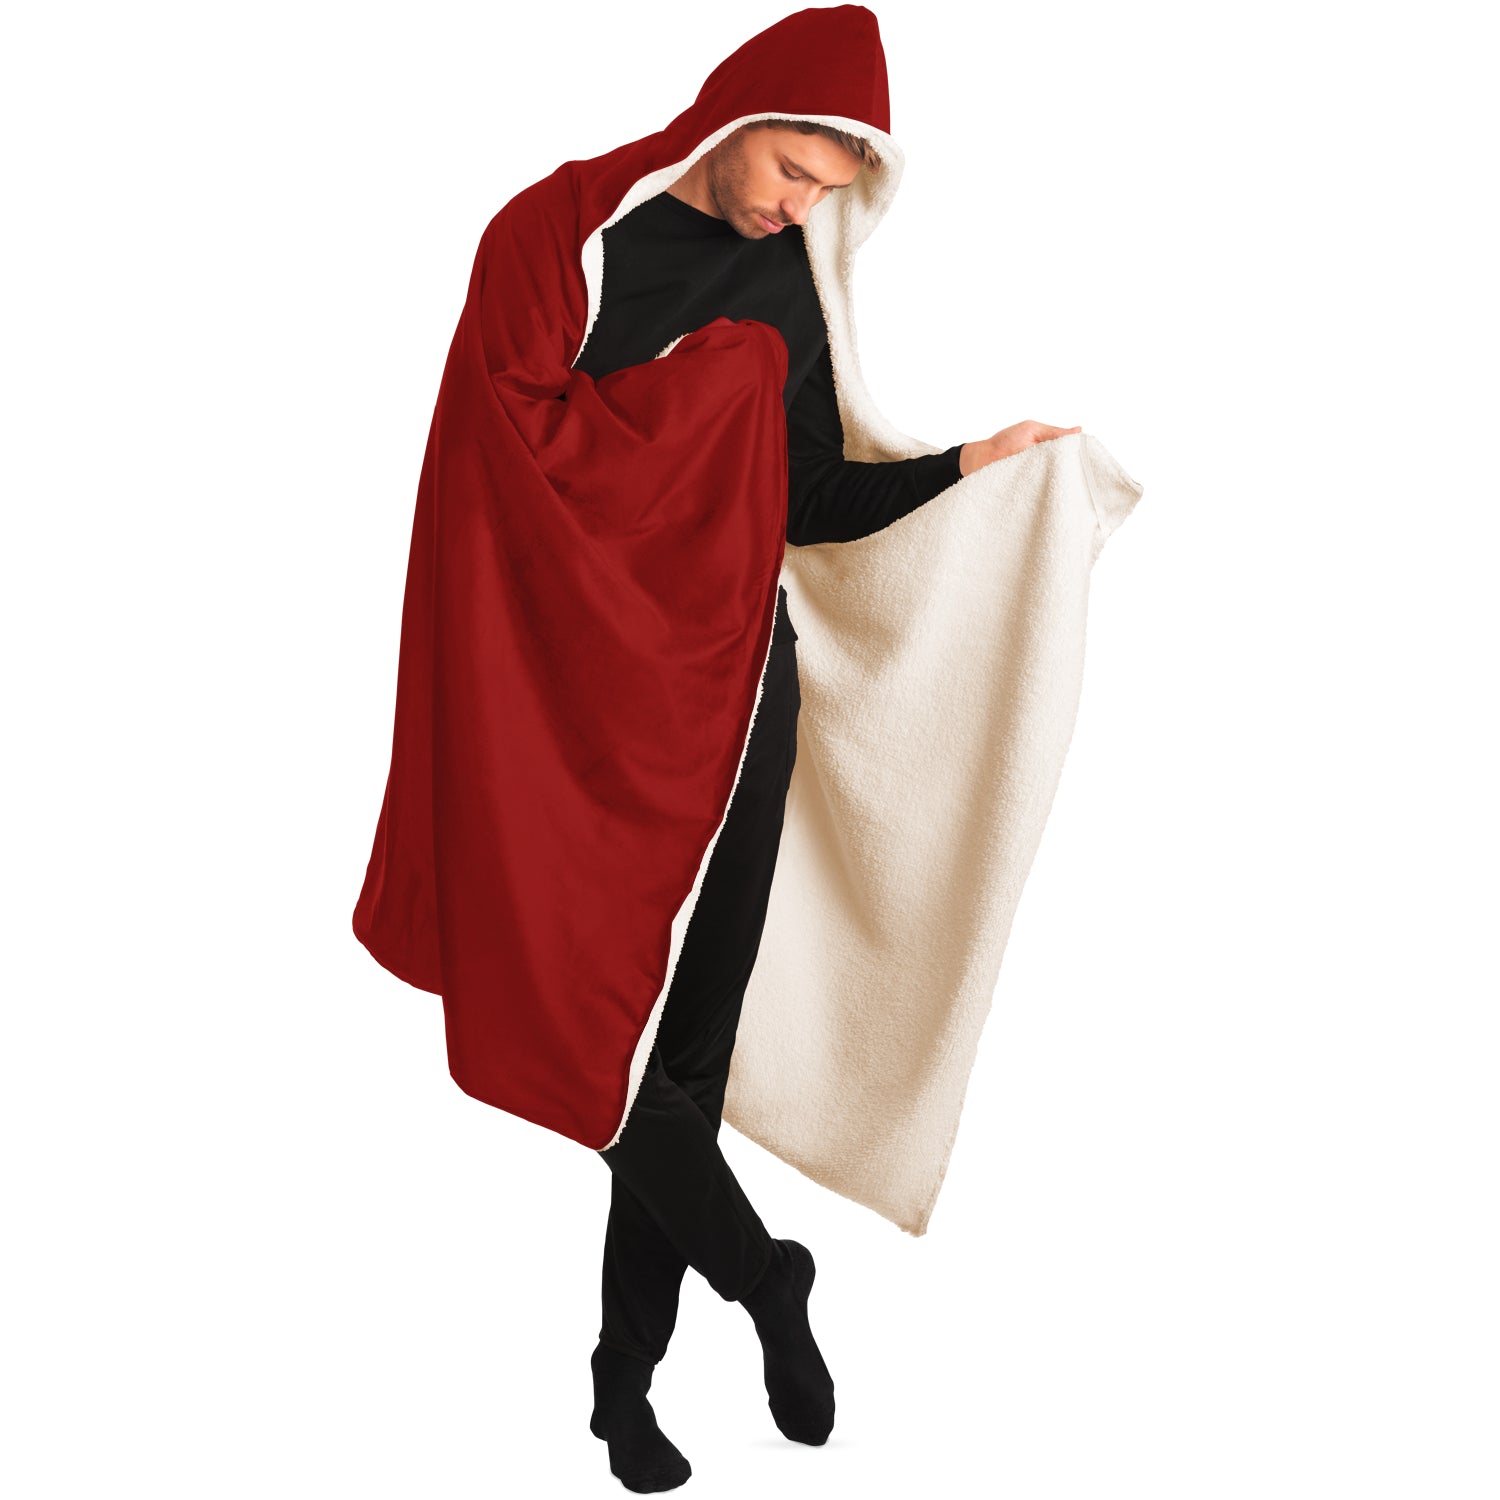 SADA Hooded Blanket - Red